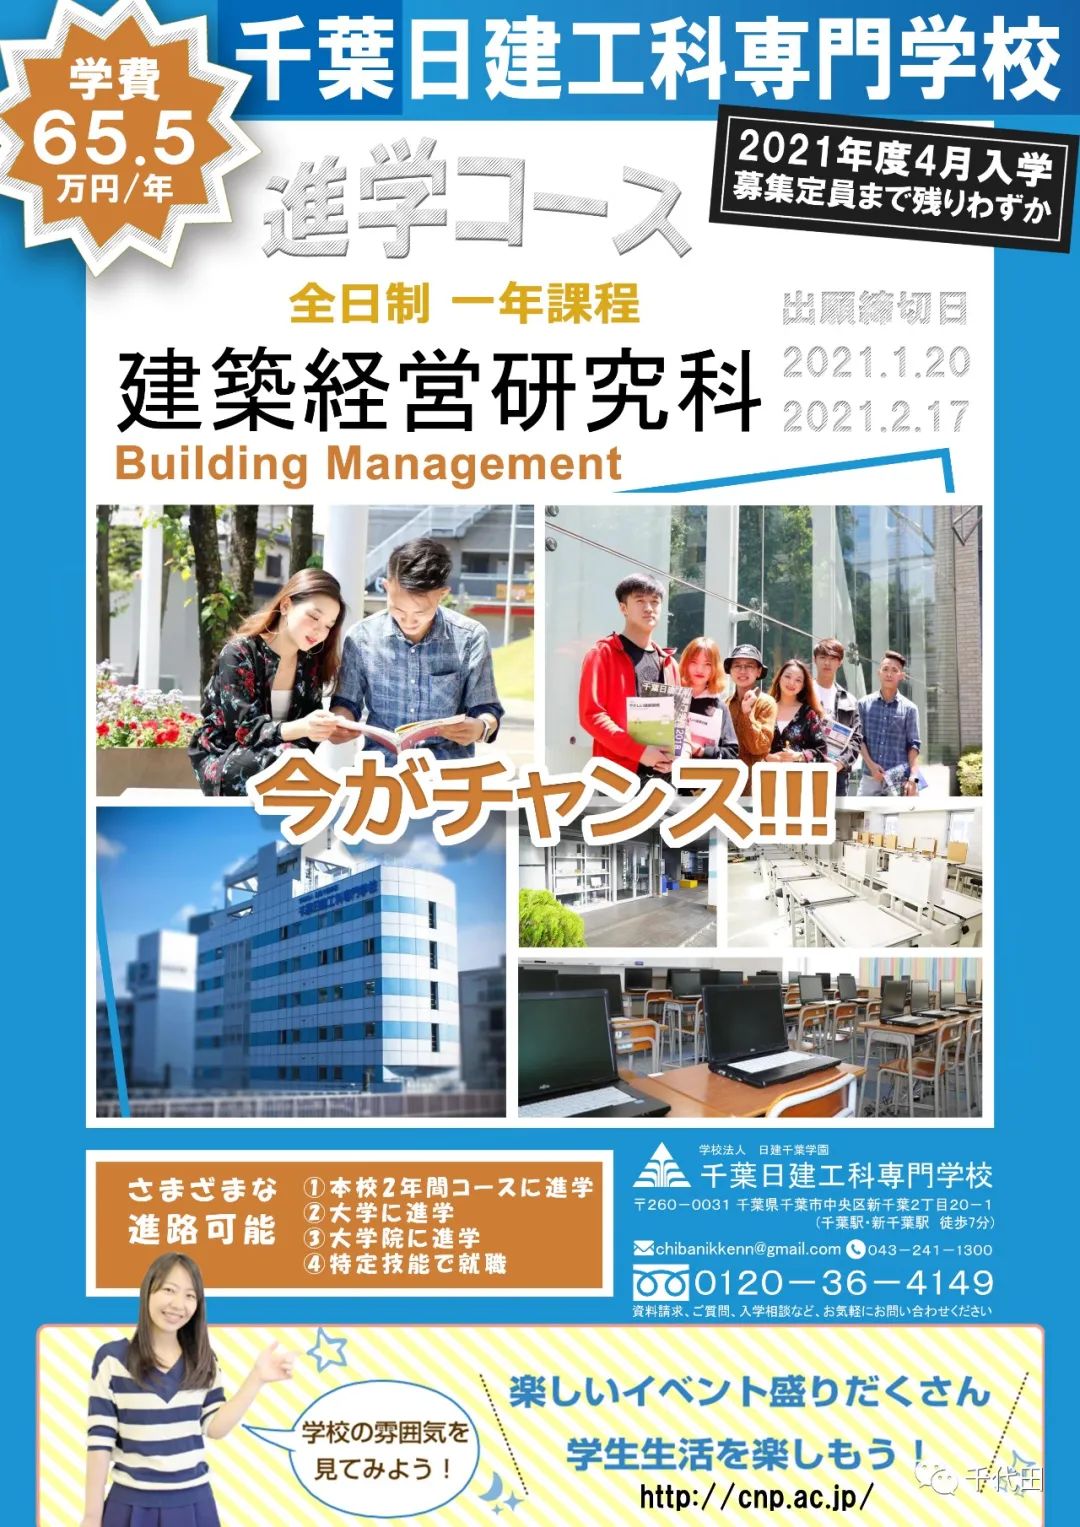 千代田资讯丨2021日本美术大学毕业展信息汇总